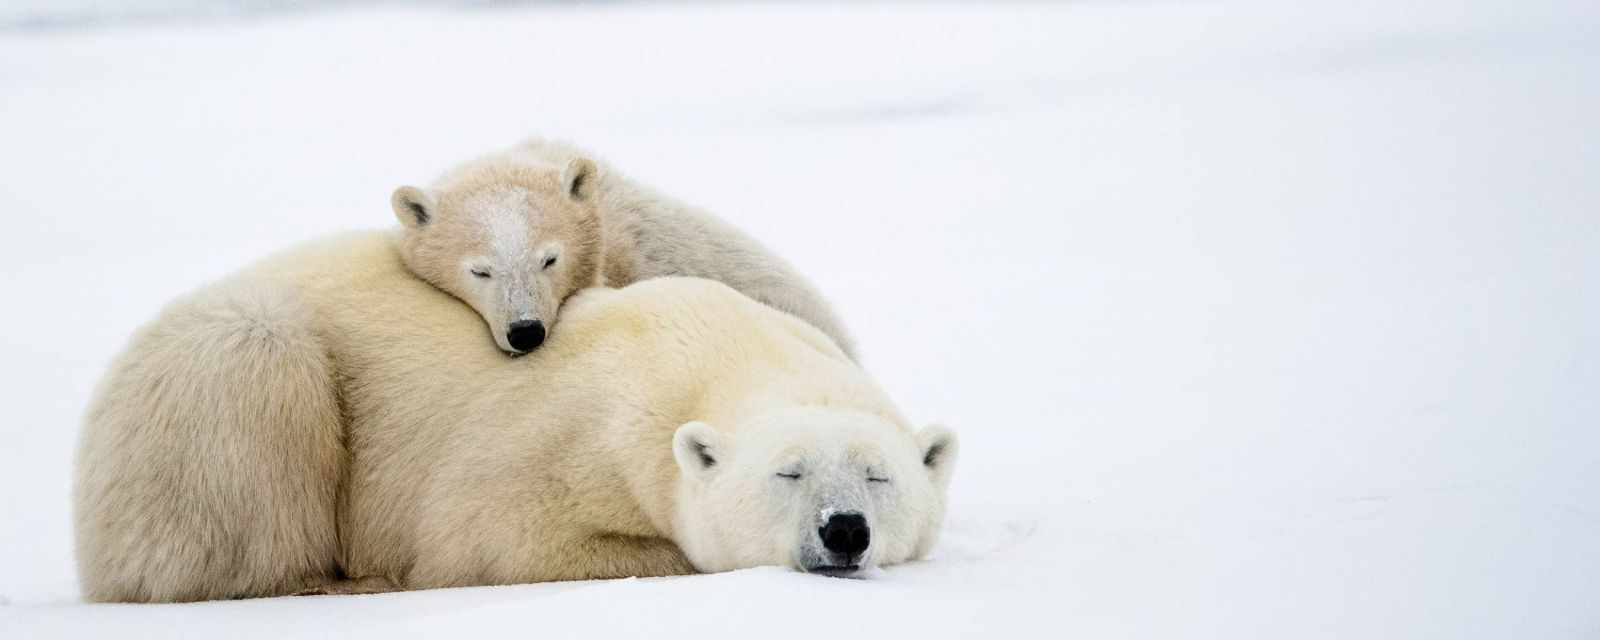 Churchill Polar Bears in Canada